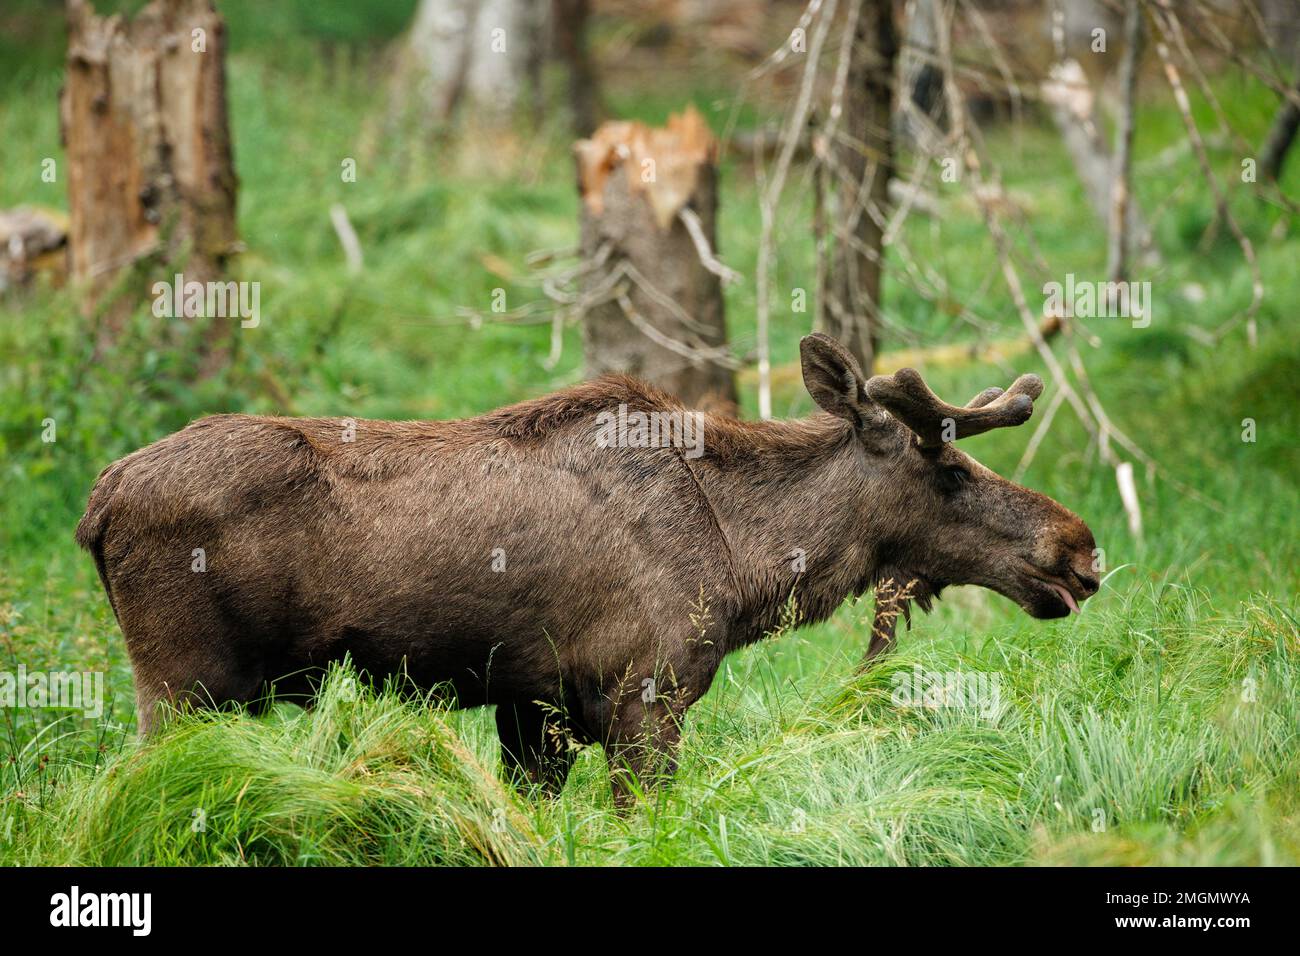 Elk européen (Alces alces) dans une clairière, Bayerricsher Wald, Allemagne Banque D'Images